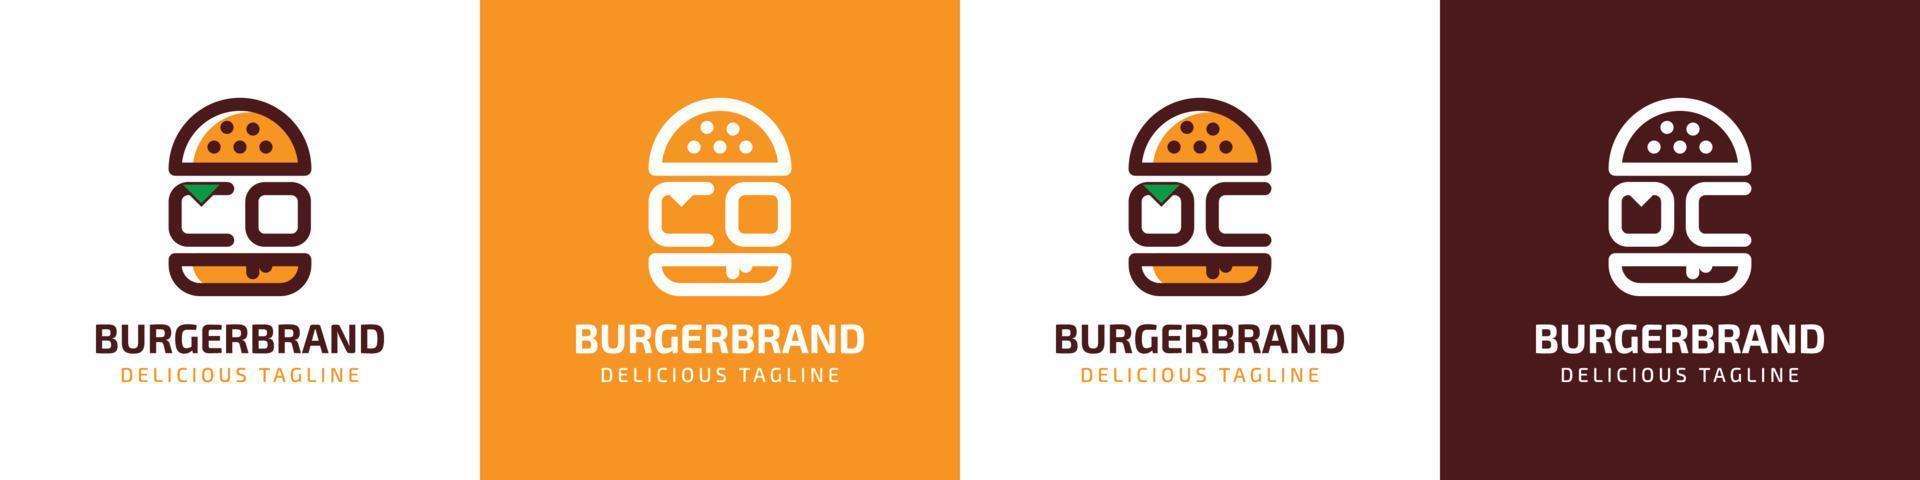 carta co e oc hamburguer logotipo, adequado para qualquer o negócio relacionado para hamburguer com co ou oc iniciais. vetor